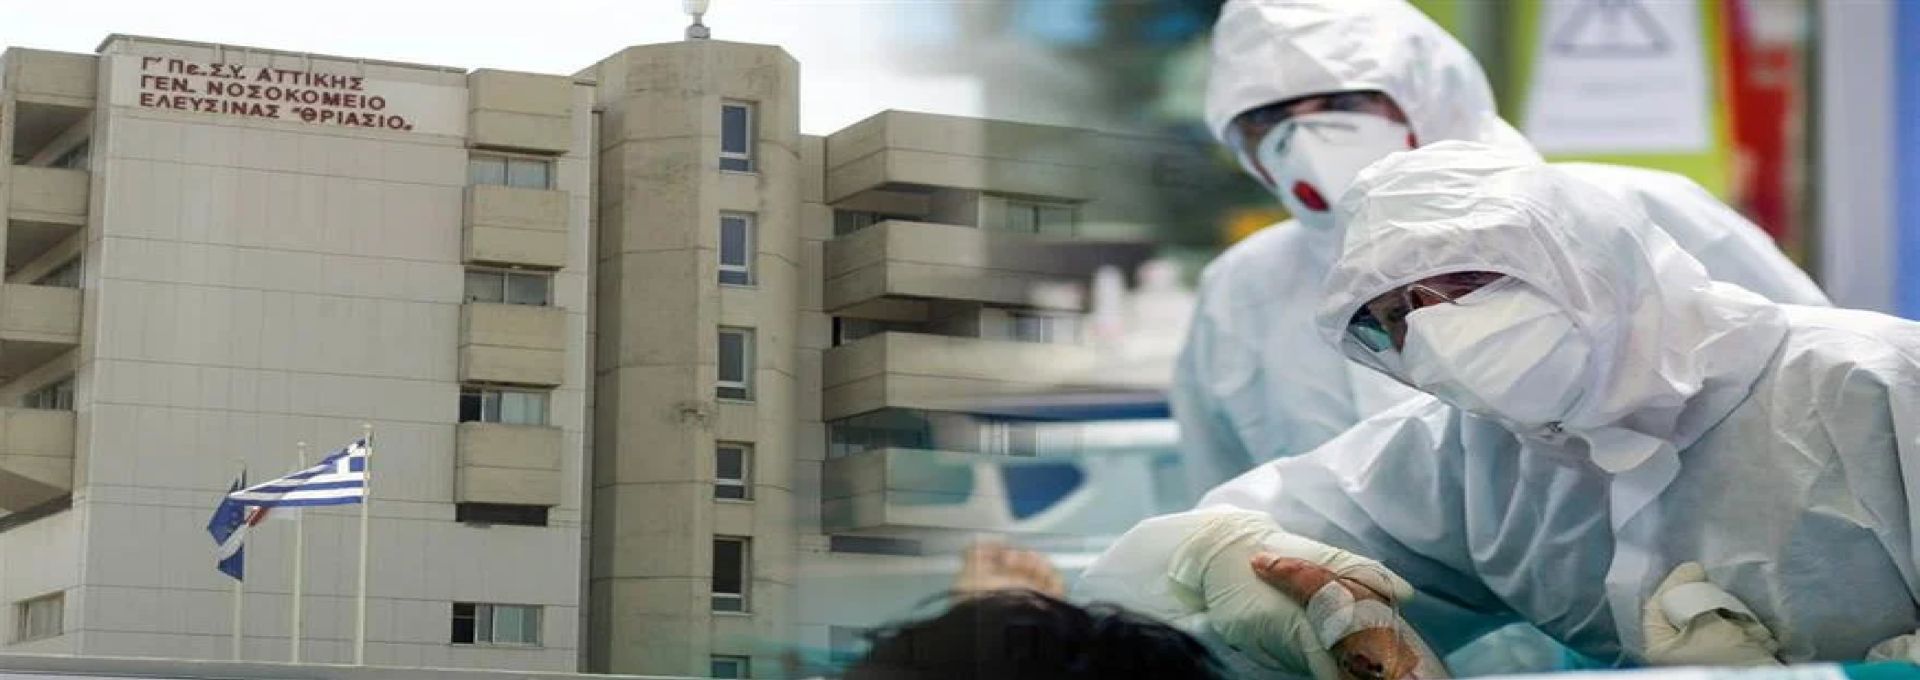 ΘΡΙΑΣΙΟ νοσοκομείο: Τζαμαρία ψυγείου έπεσε πάνω σε εργαζόμενο